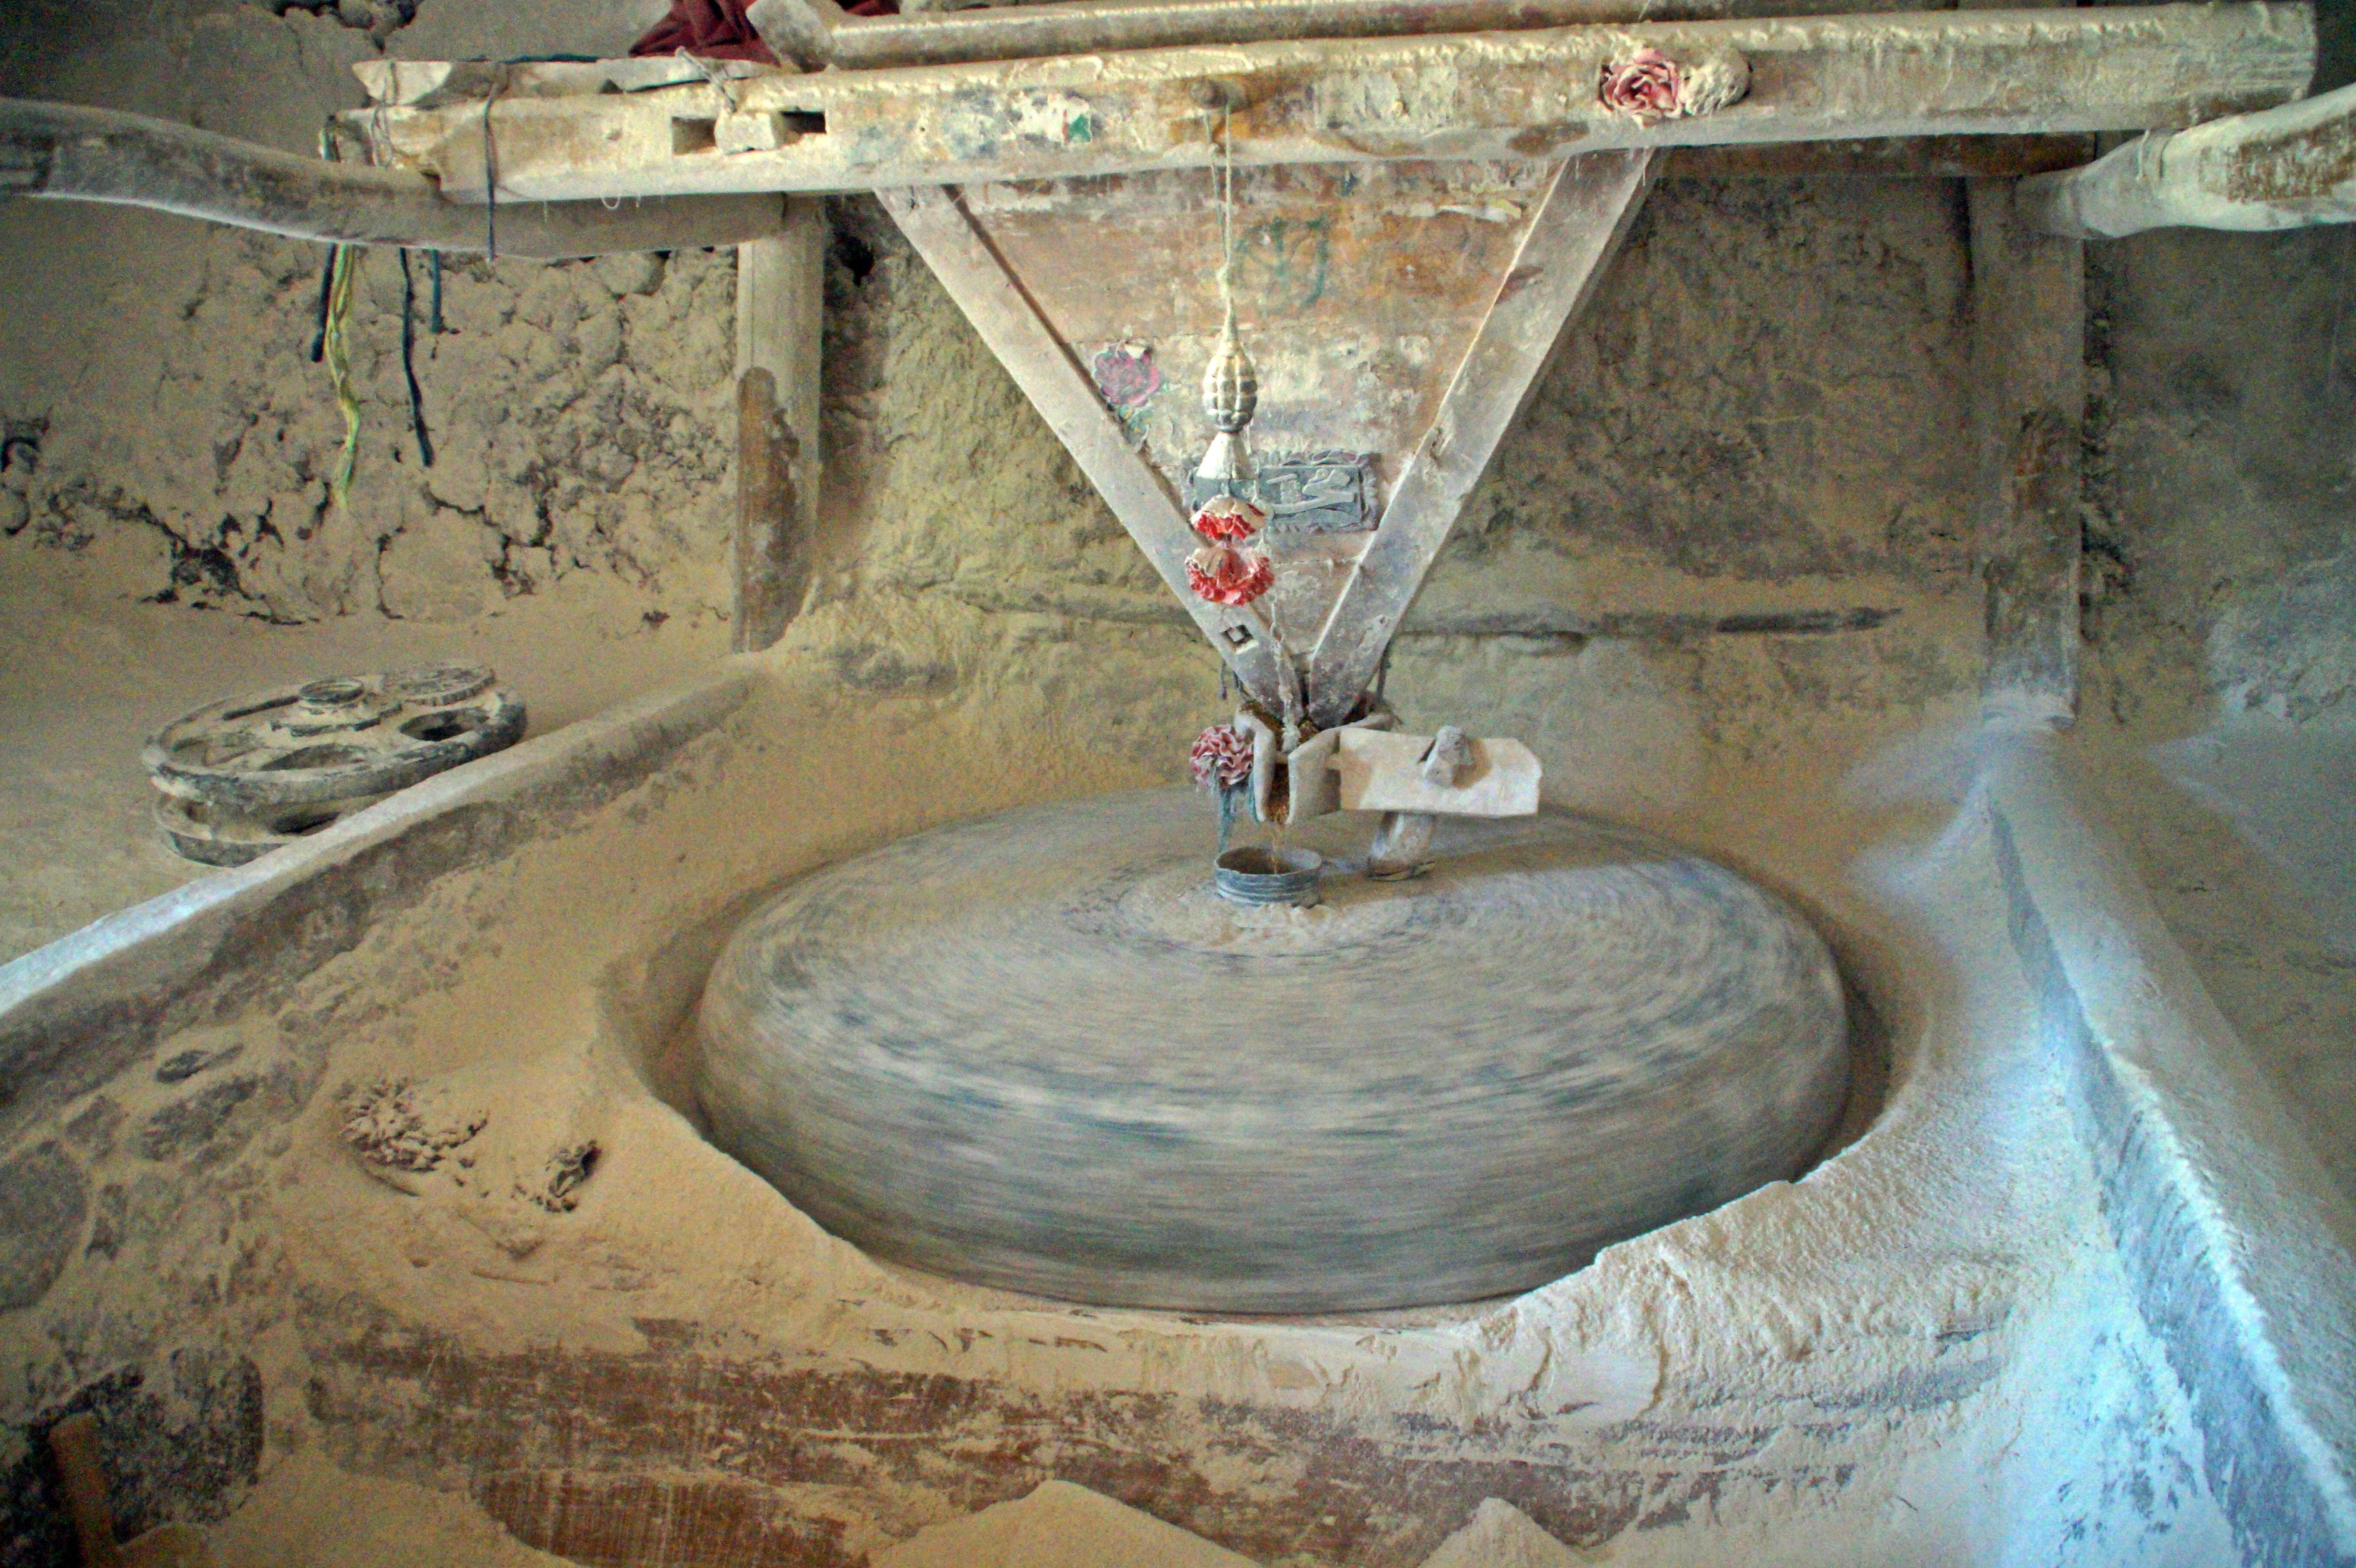 Inside the flour mill